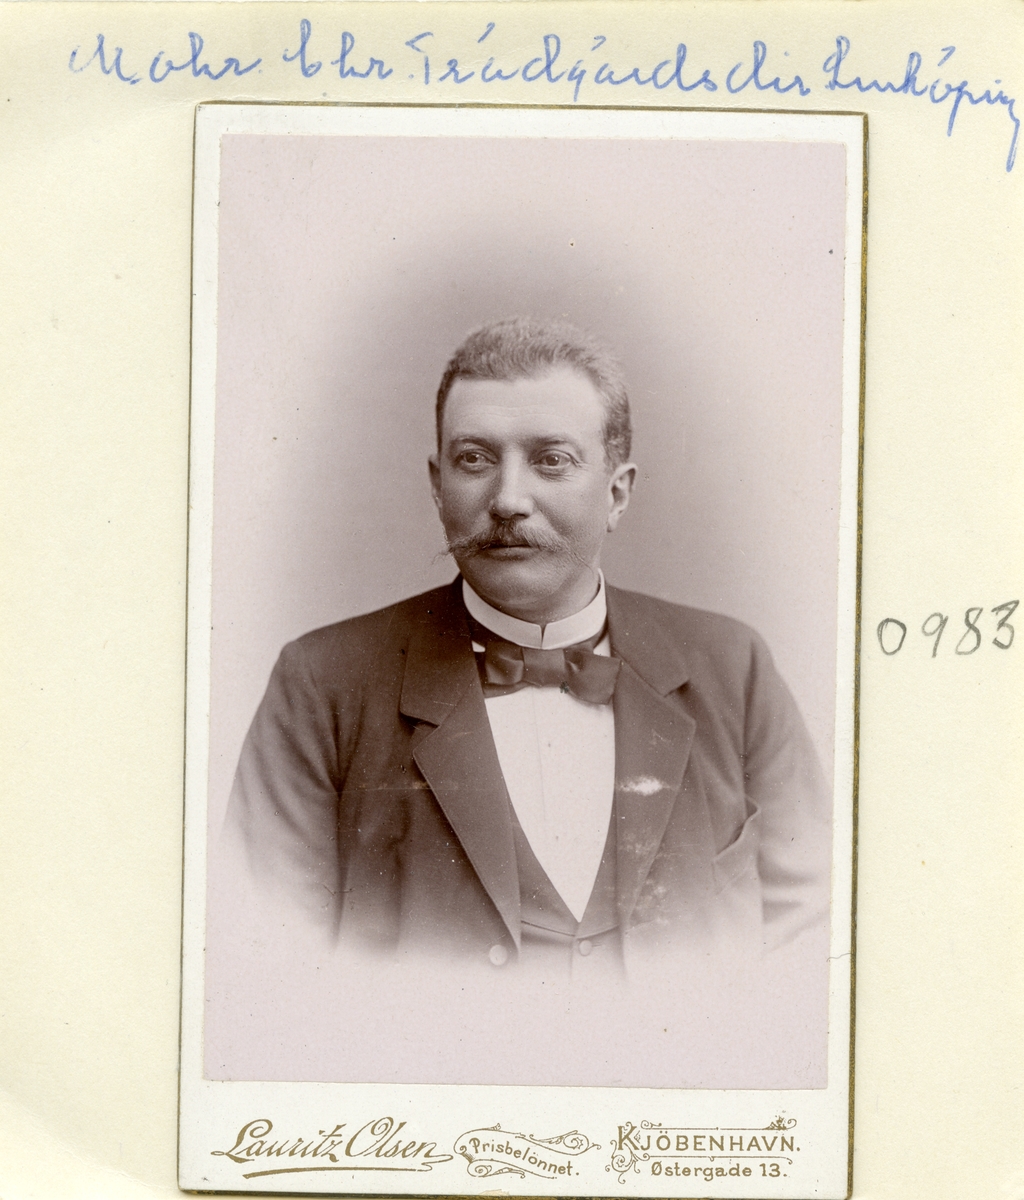 Porträtt av den tyske undersåten Christian Mohr. År 1878 invandrad till Sverige för tjänsten som länsträdgårdsmästare i Östergötland med Linköping som bostadsort. Från 1901 gift med Maria Lovisa Lundborg.